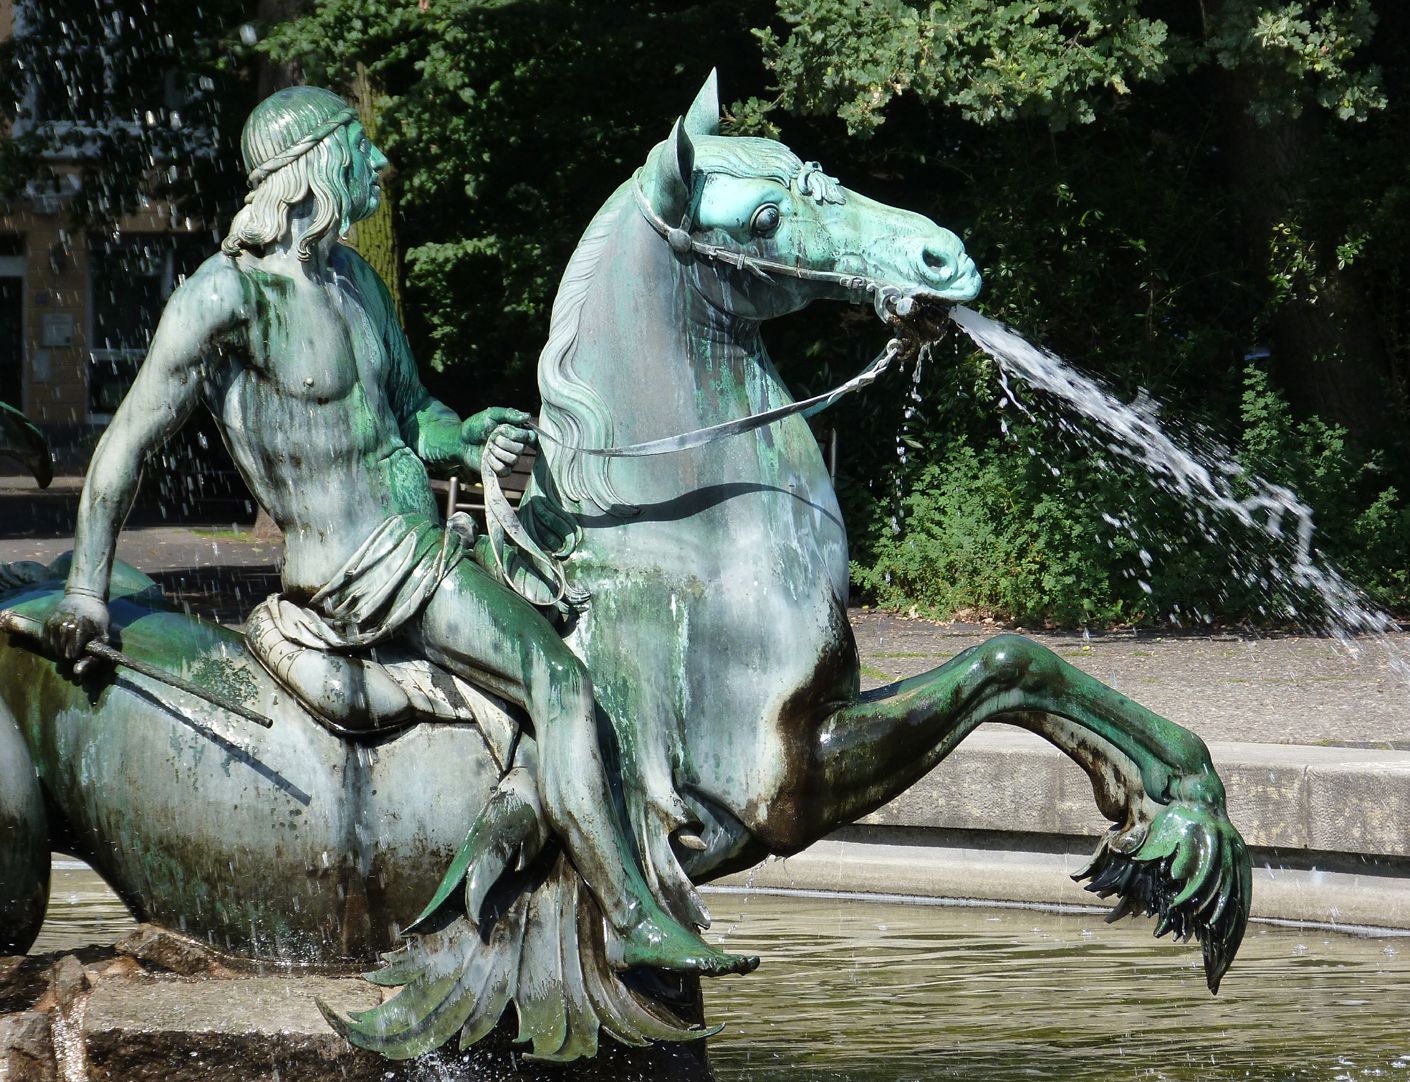 Neptun-Fountain Triton rider, north side